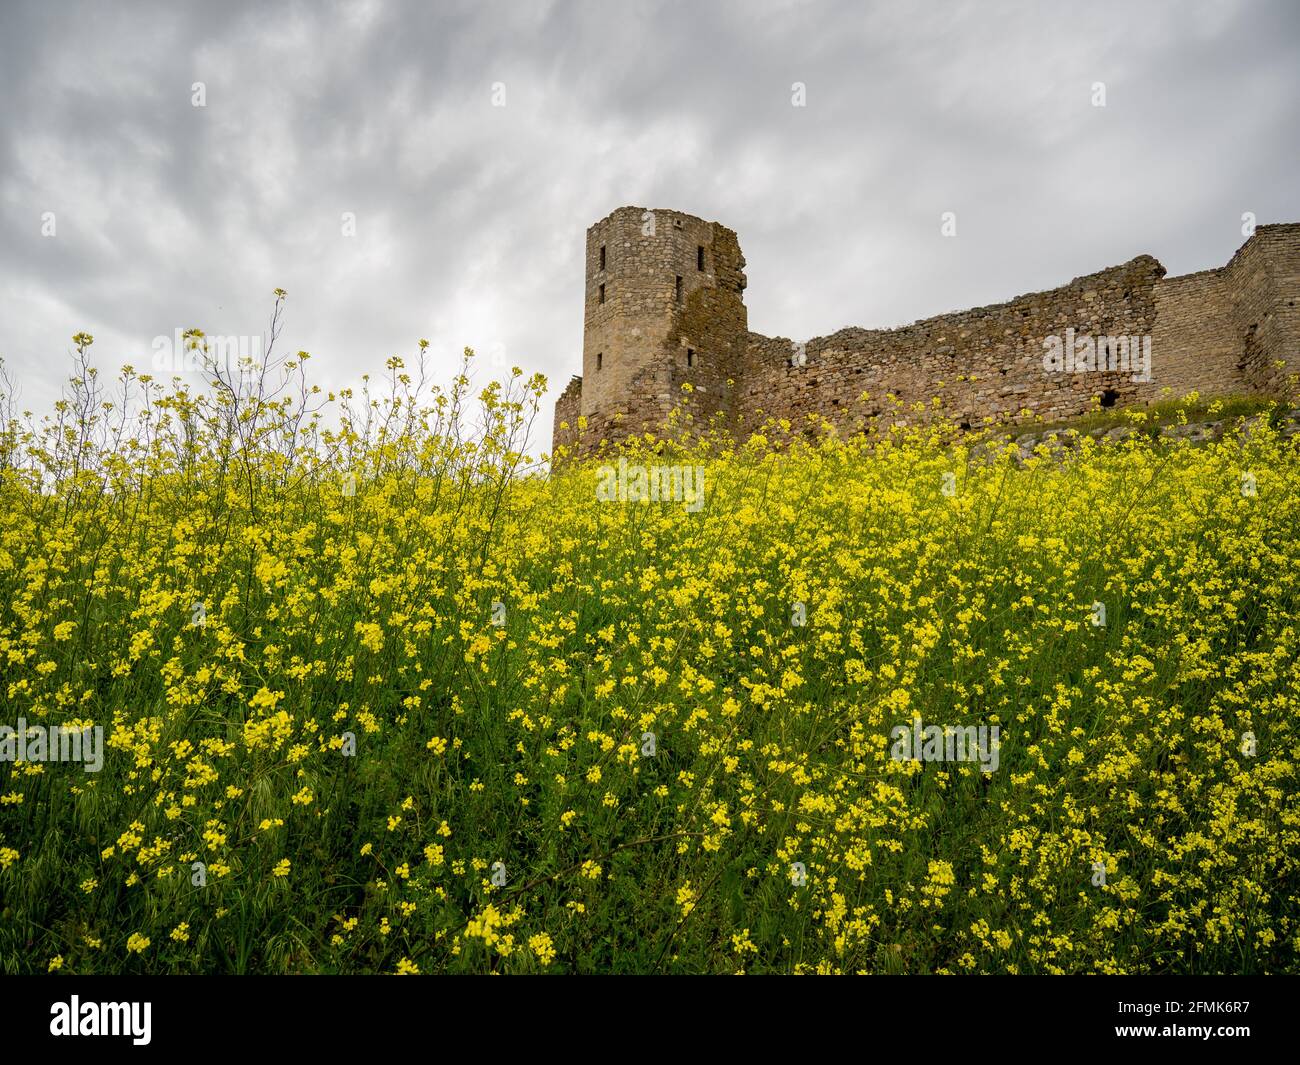 Ruinen der alten mittelalterlichen Burg, enisala, in der Nähe des sees razim-sinoie, dobrogea Region, rumänien Stockfoto